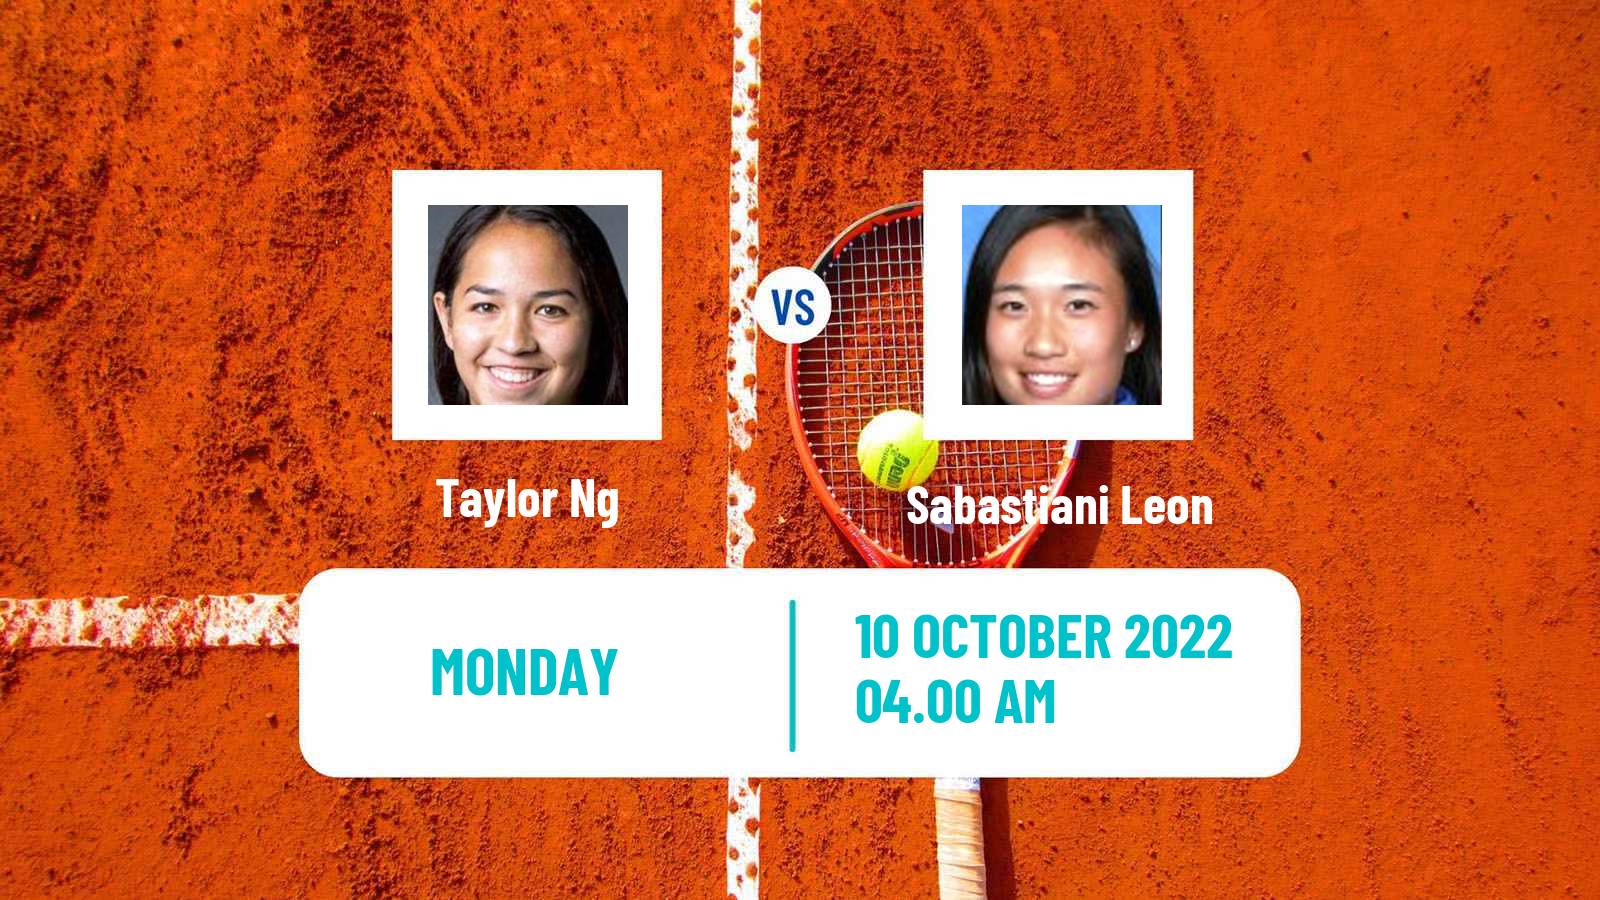 Tennis ITF Tournaments Taylor Ng - Sabastiani Leon